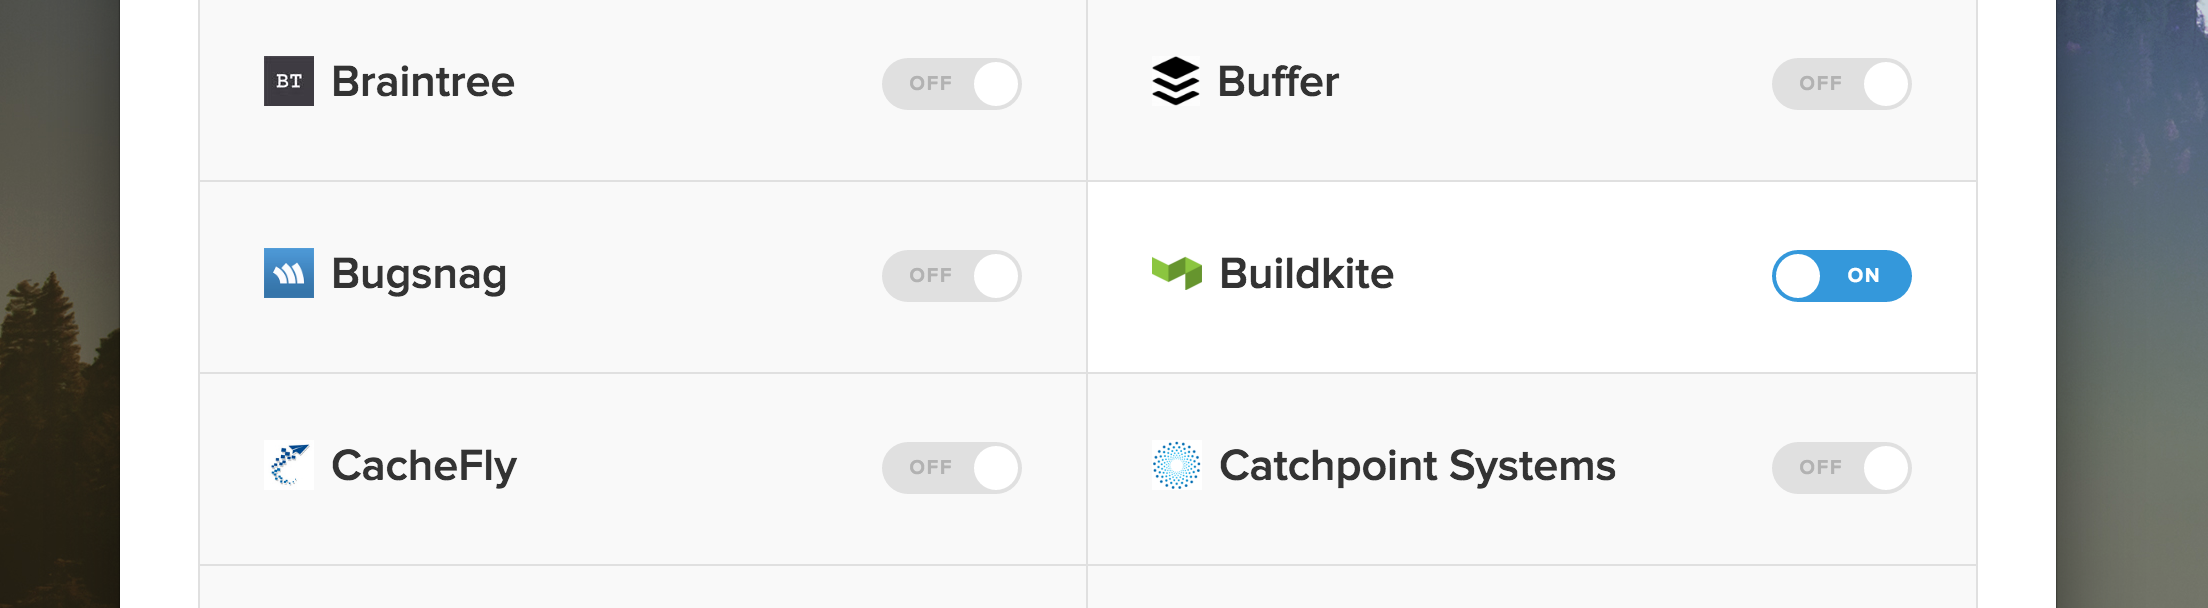 Buildkite-StatusPage-Enable.png